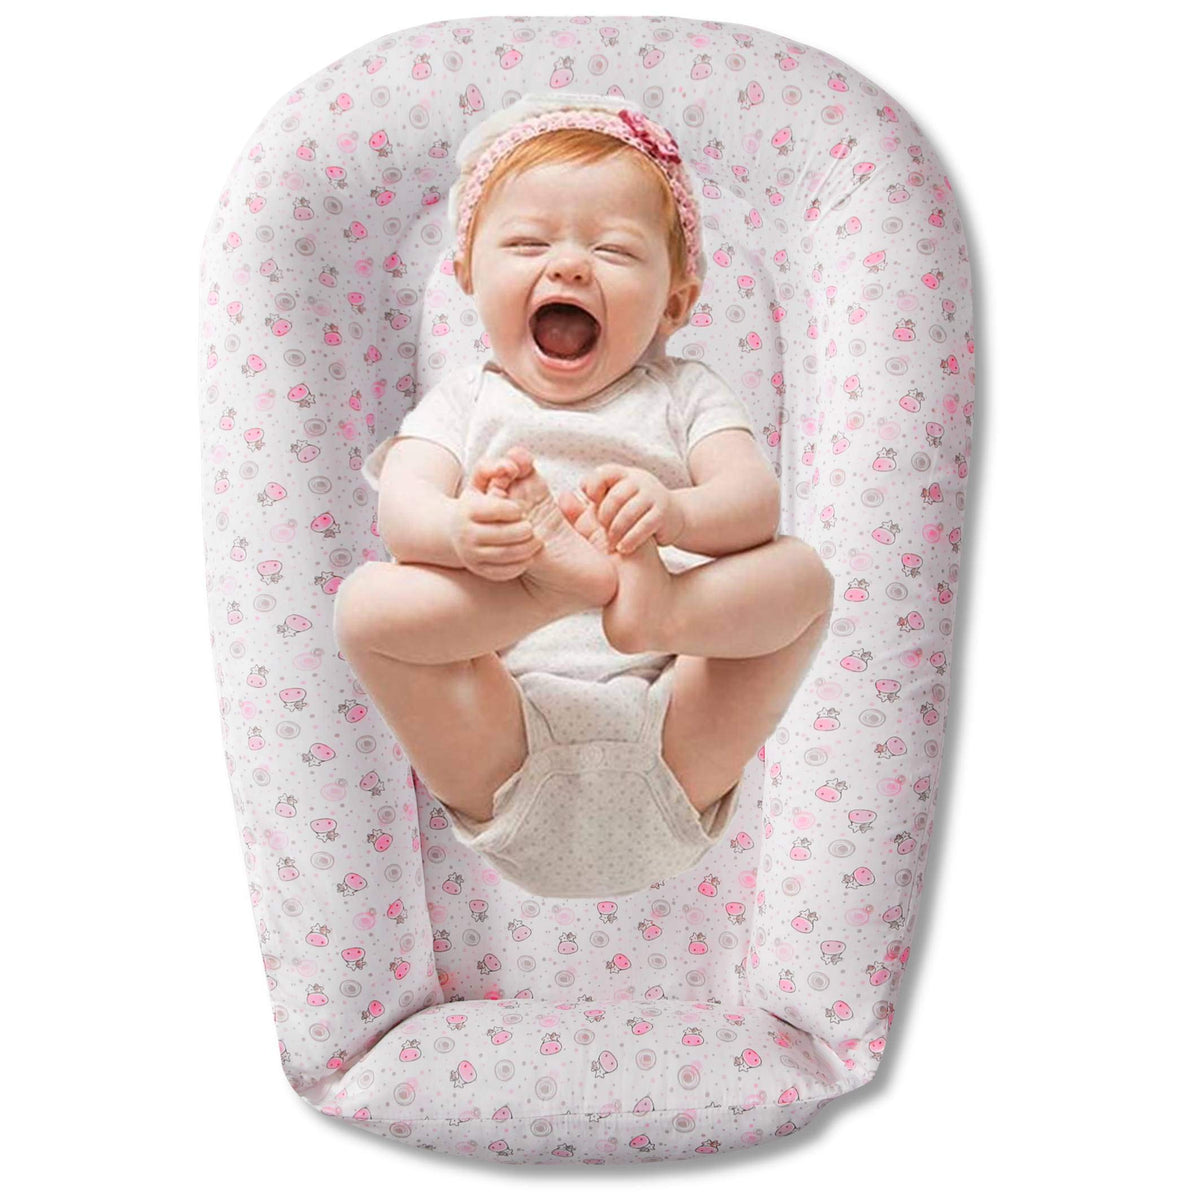 Baby Lounger for Newborns (Little Heart)